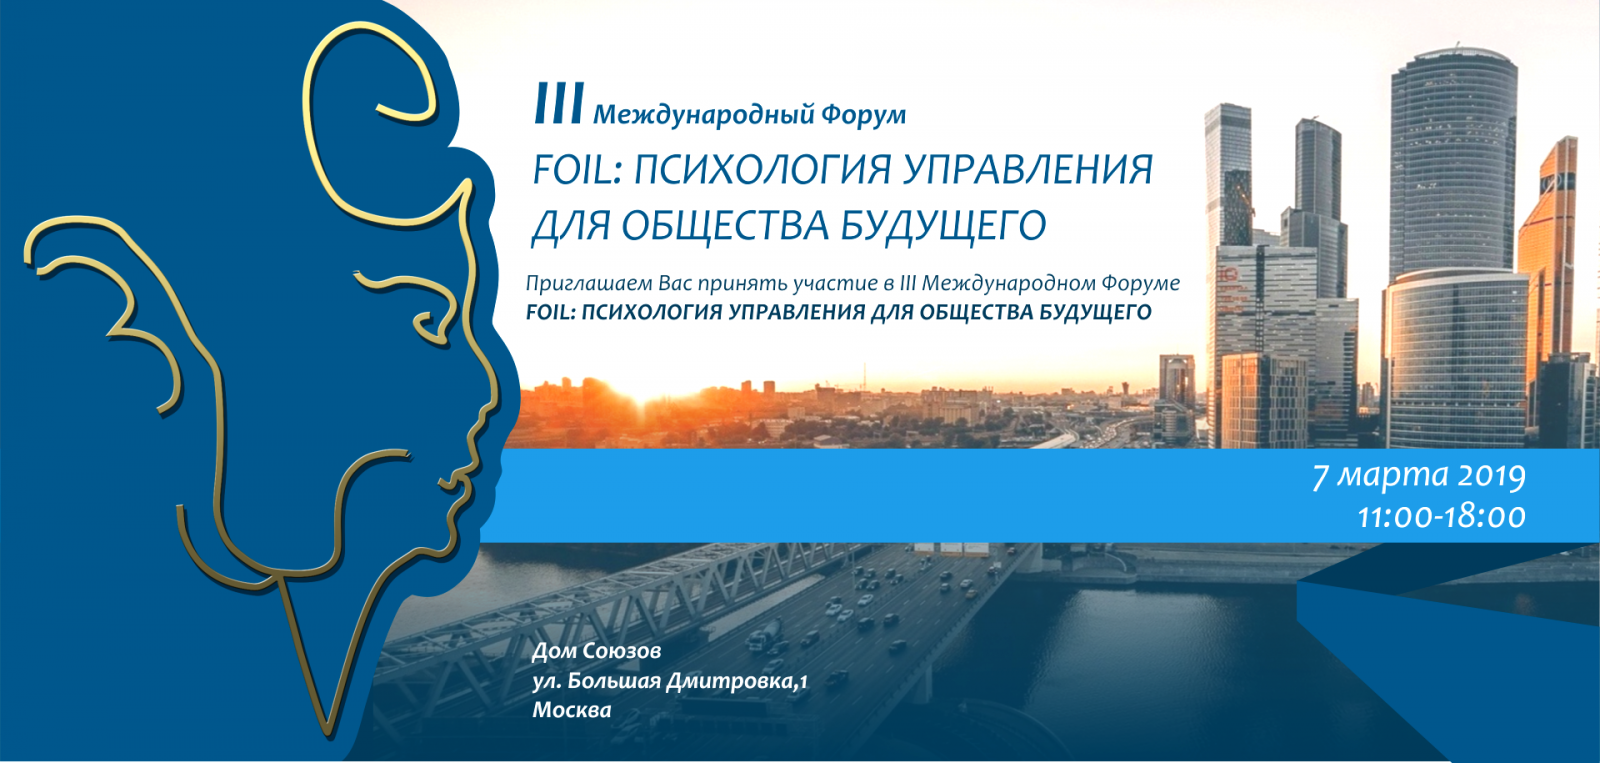  III Международный Форум «FOIL: психология управления для общества будущего»